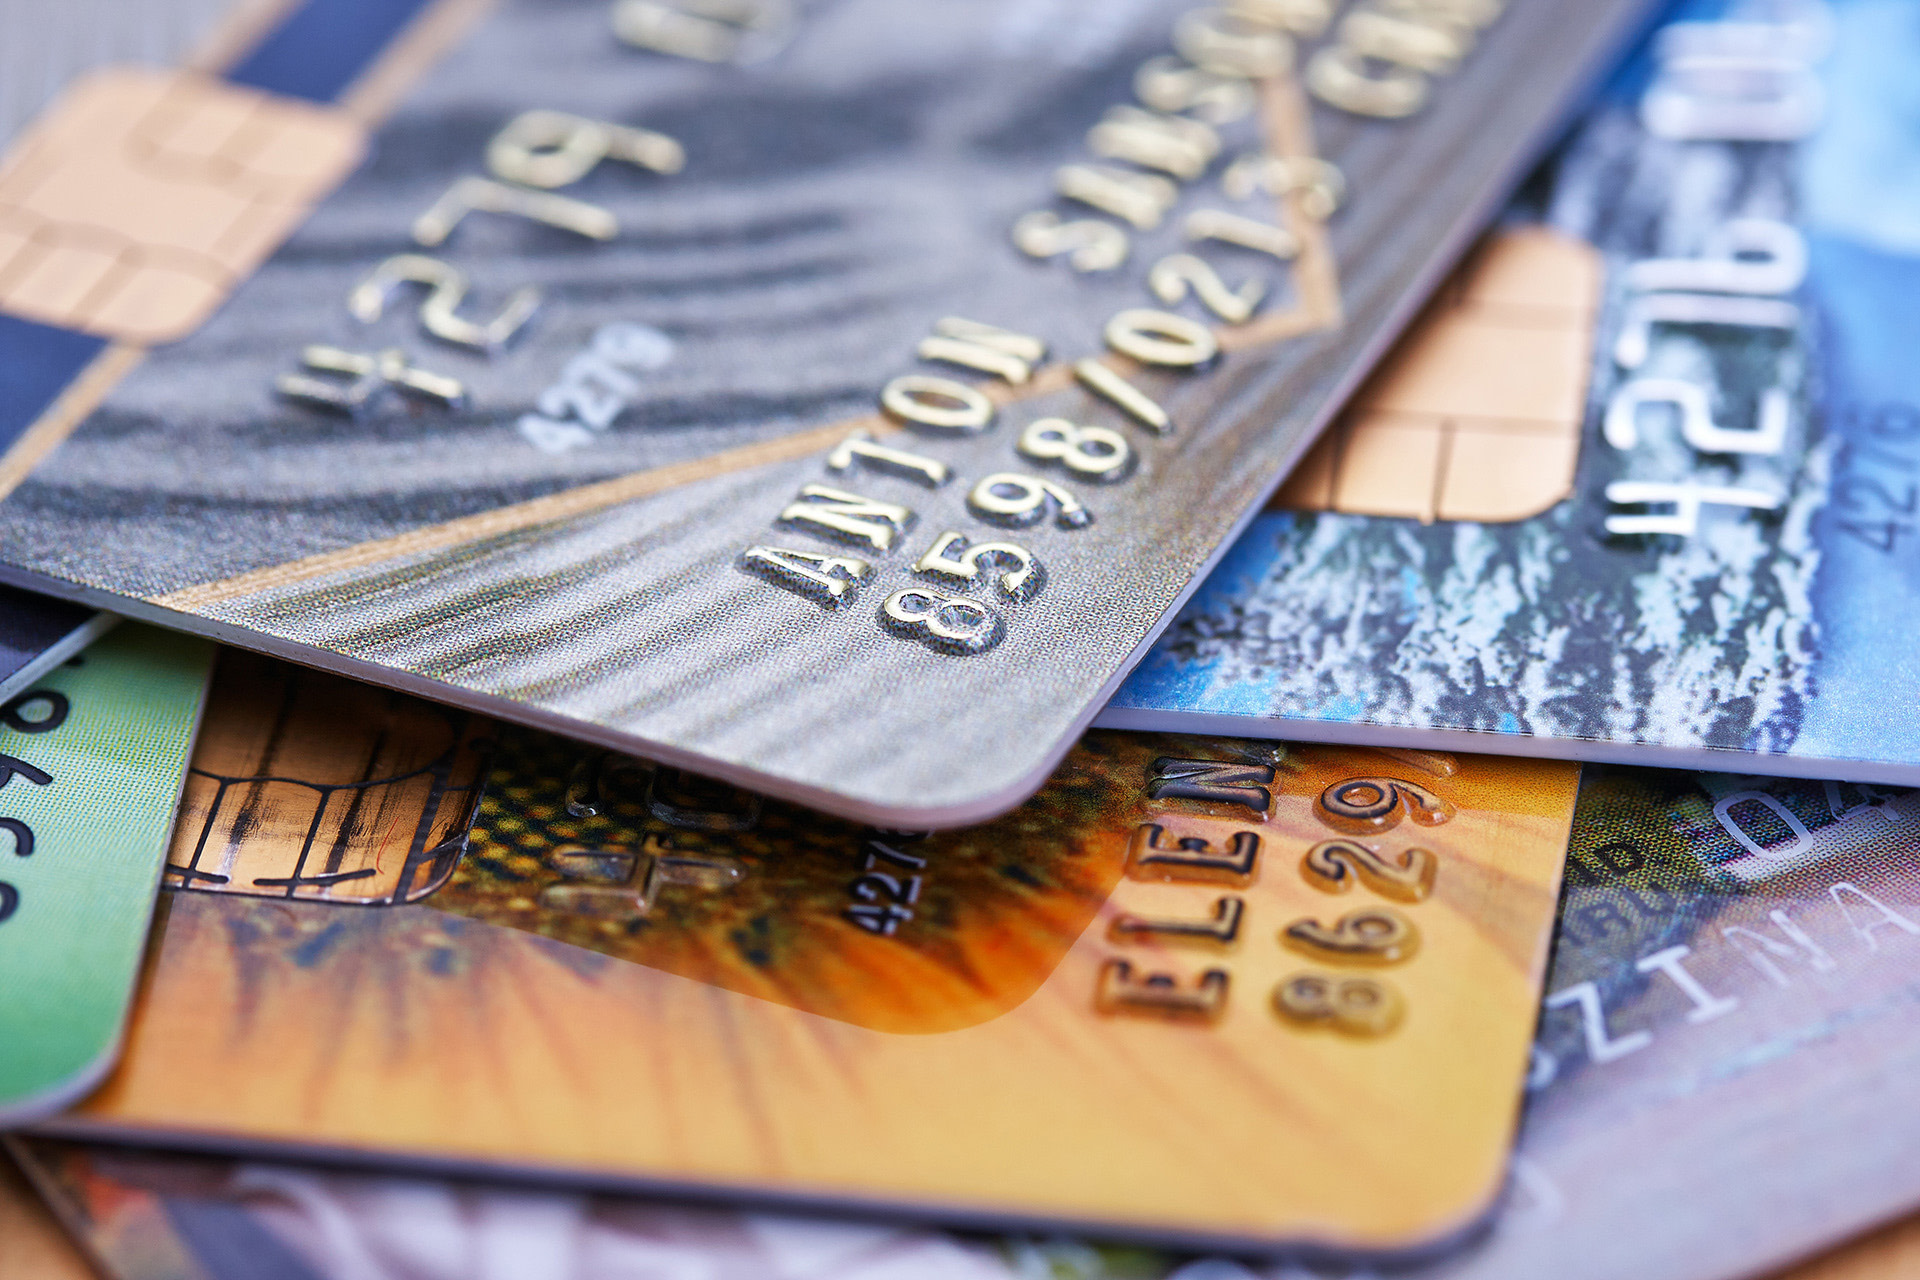 Stapel von Kreditkarten. Infoartikel zum Zahlen im Ausland